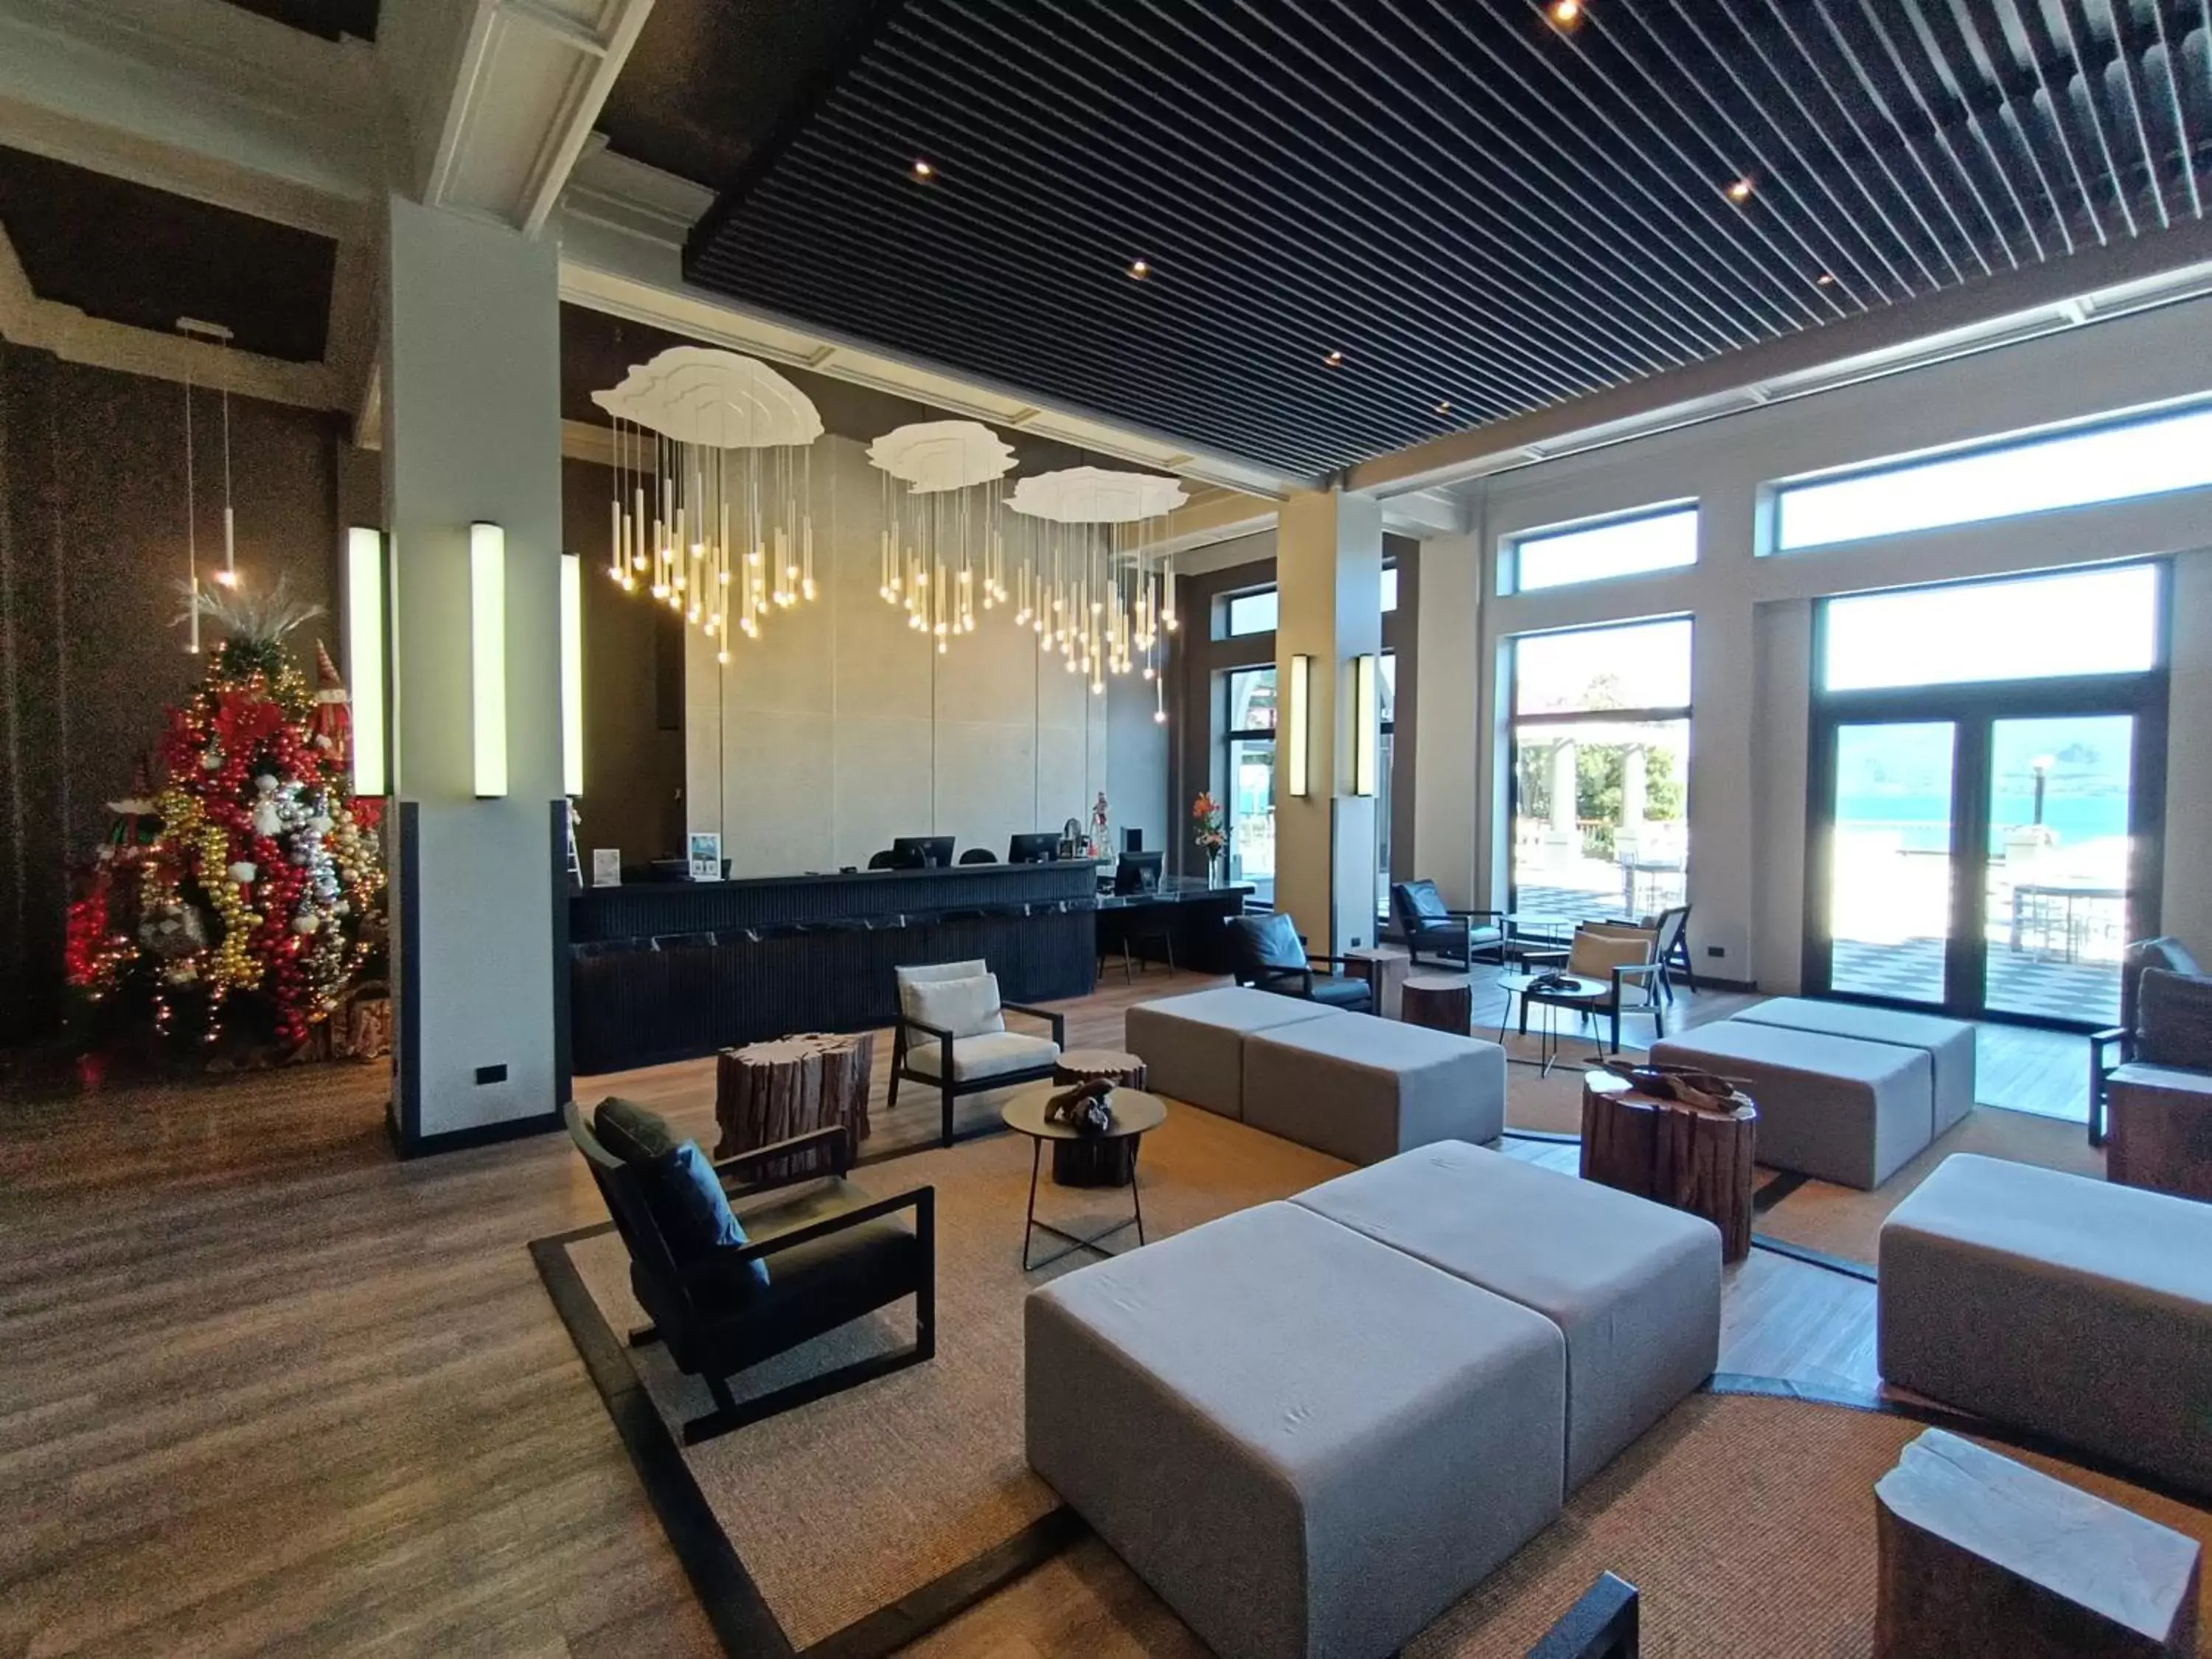 Lobby or reception in Hotel Enjoy Pucon